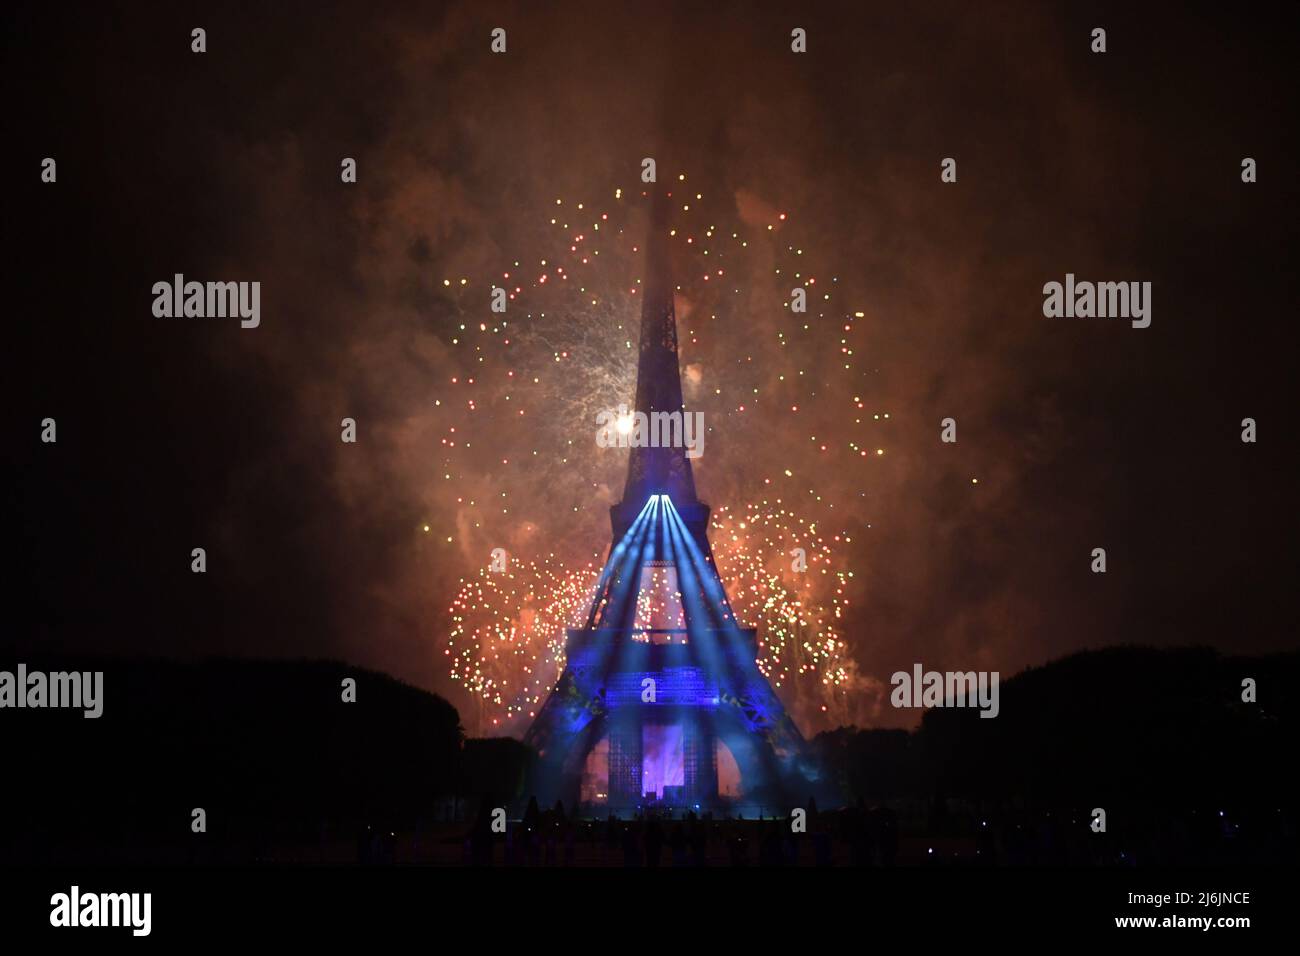 Feux d'artifice sur la tour Eiffel à Paris pour la visite nationale française d'eifel feu d'artifice Banque D'Images